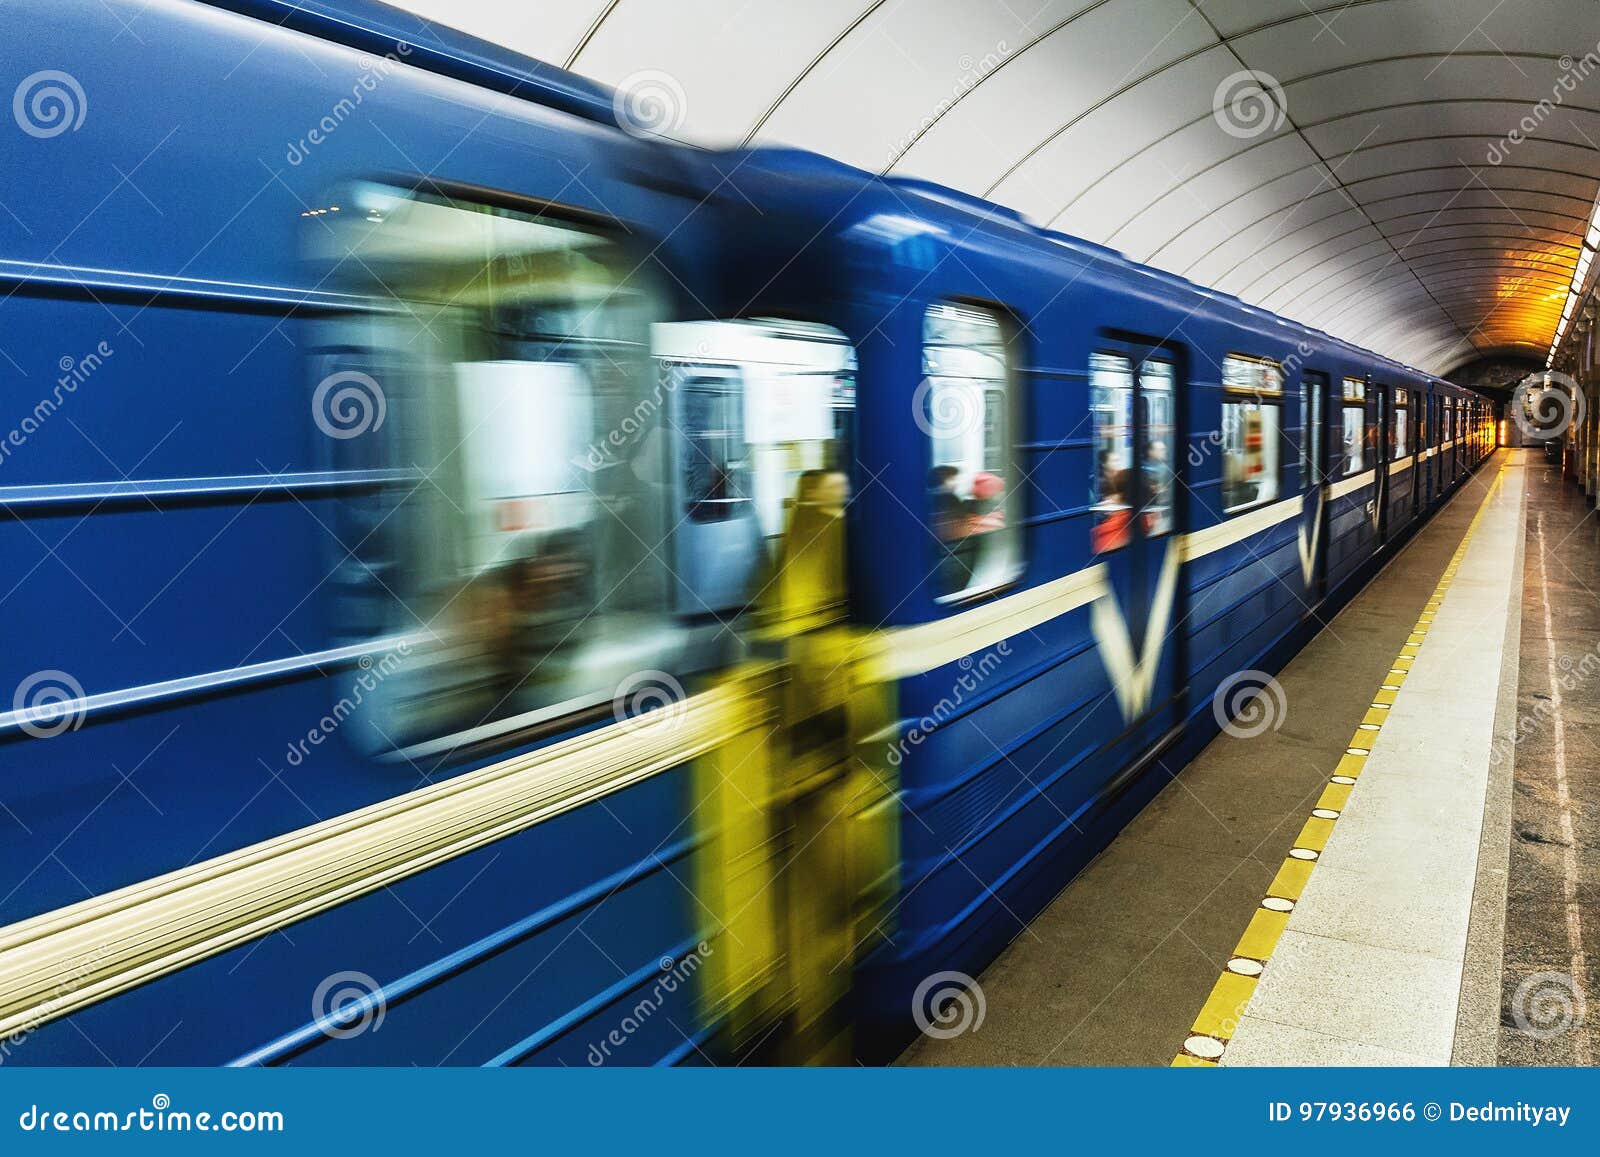 Синий метрополитен. Синий вагон метро. Синий поезд метро. Голубой поезд метро. Поезд метро голубой с желтым.